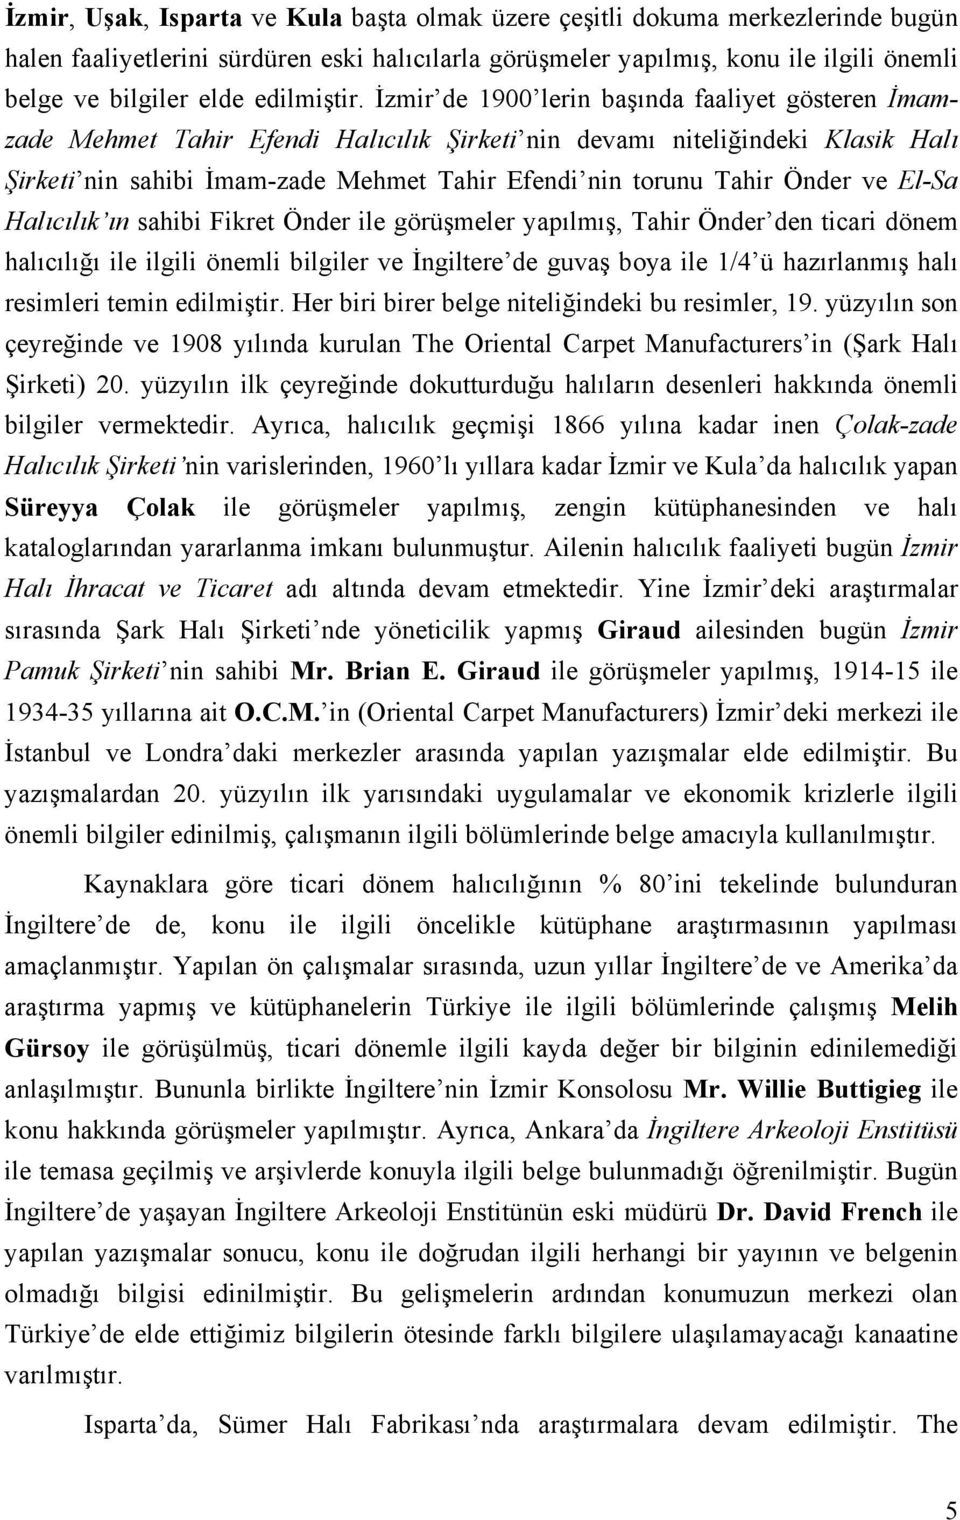 İzmir de 1900 lerin başında faaliyet gösteren İmamzade Mehmet Tahir Efendi Halıcılık Şirketi nin devamı niteliğindeki Klasik Halı Şirketi nin sahibi İmam-zade Mehmet Tahir Efendi nin torunu Tahir